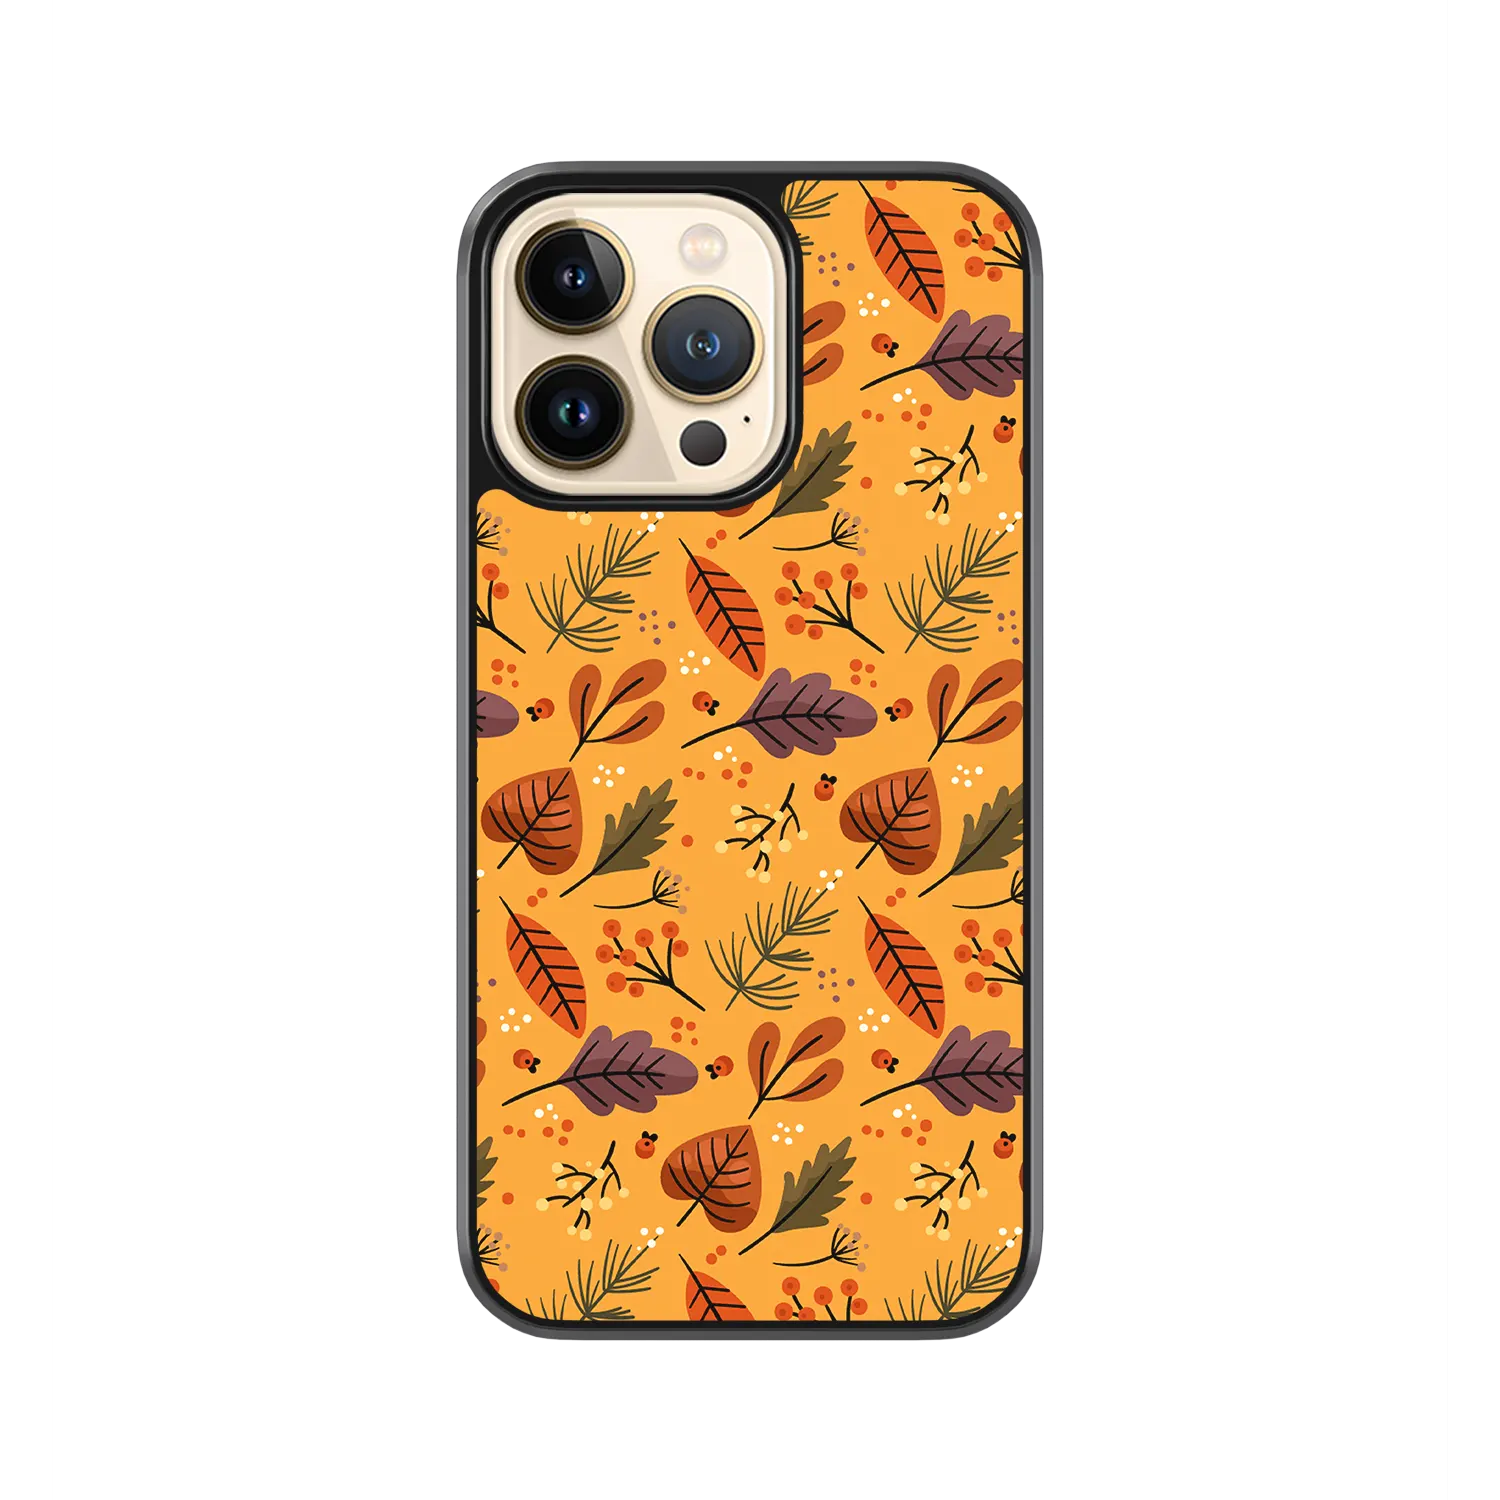 Autumn Orange iPhone 11 Pro Max Case